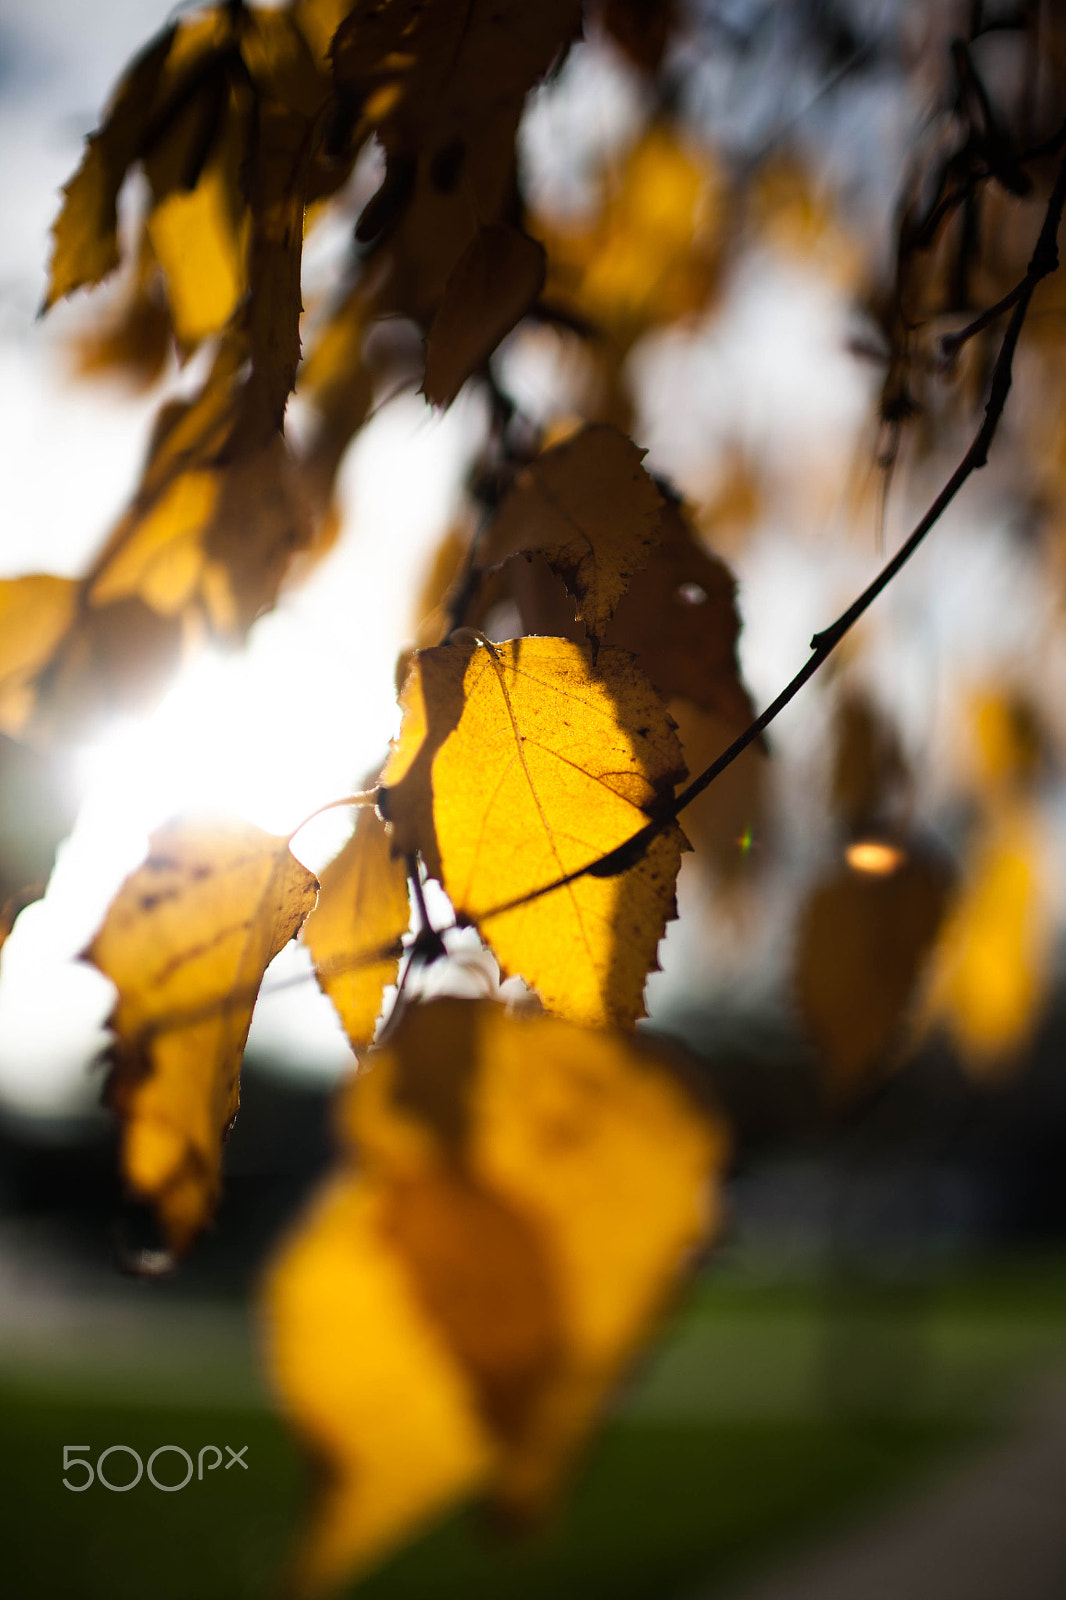 Canon EOS 5D sample photo. Fall season photography